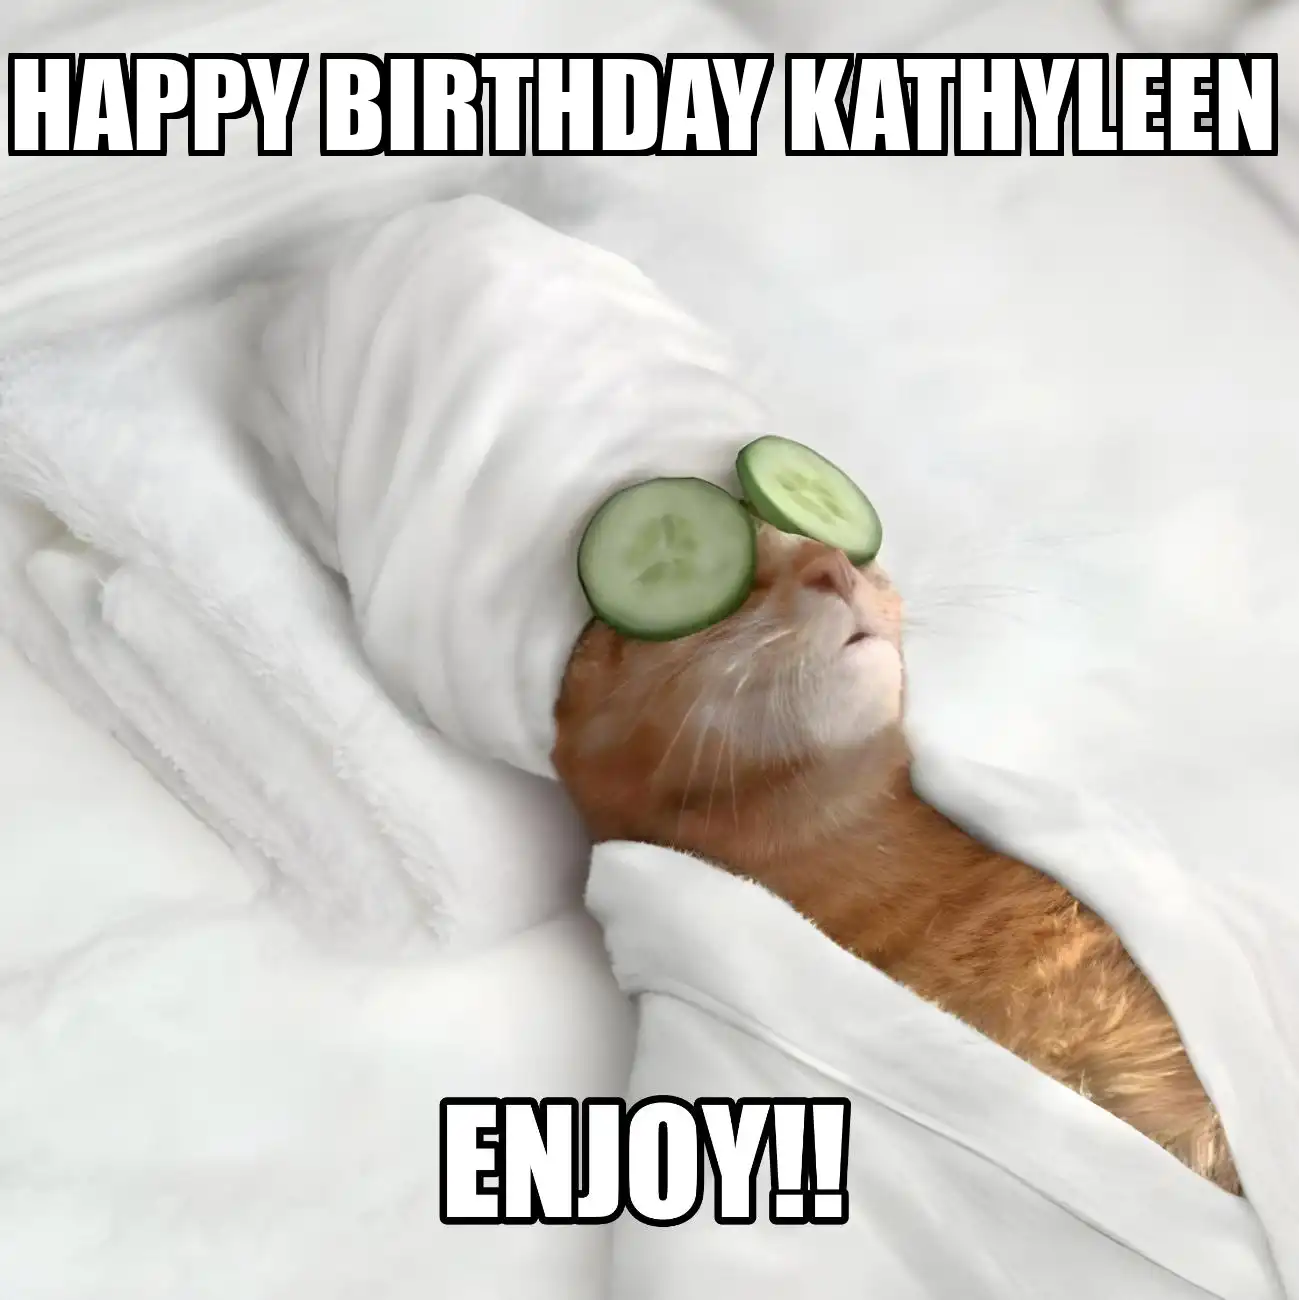 Happy Birthday Kathyleen Enjoy Cat Meme